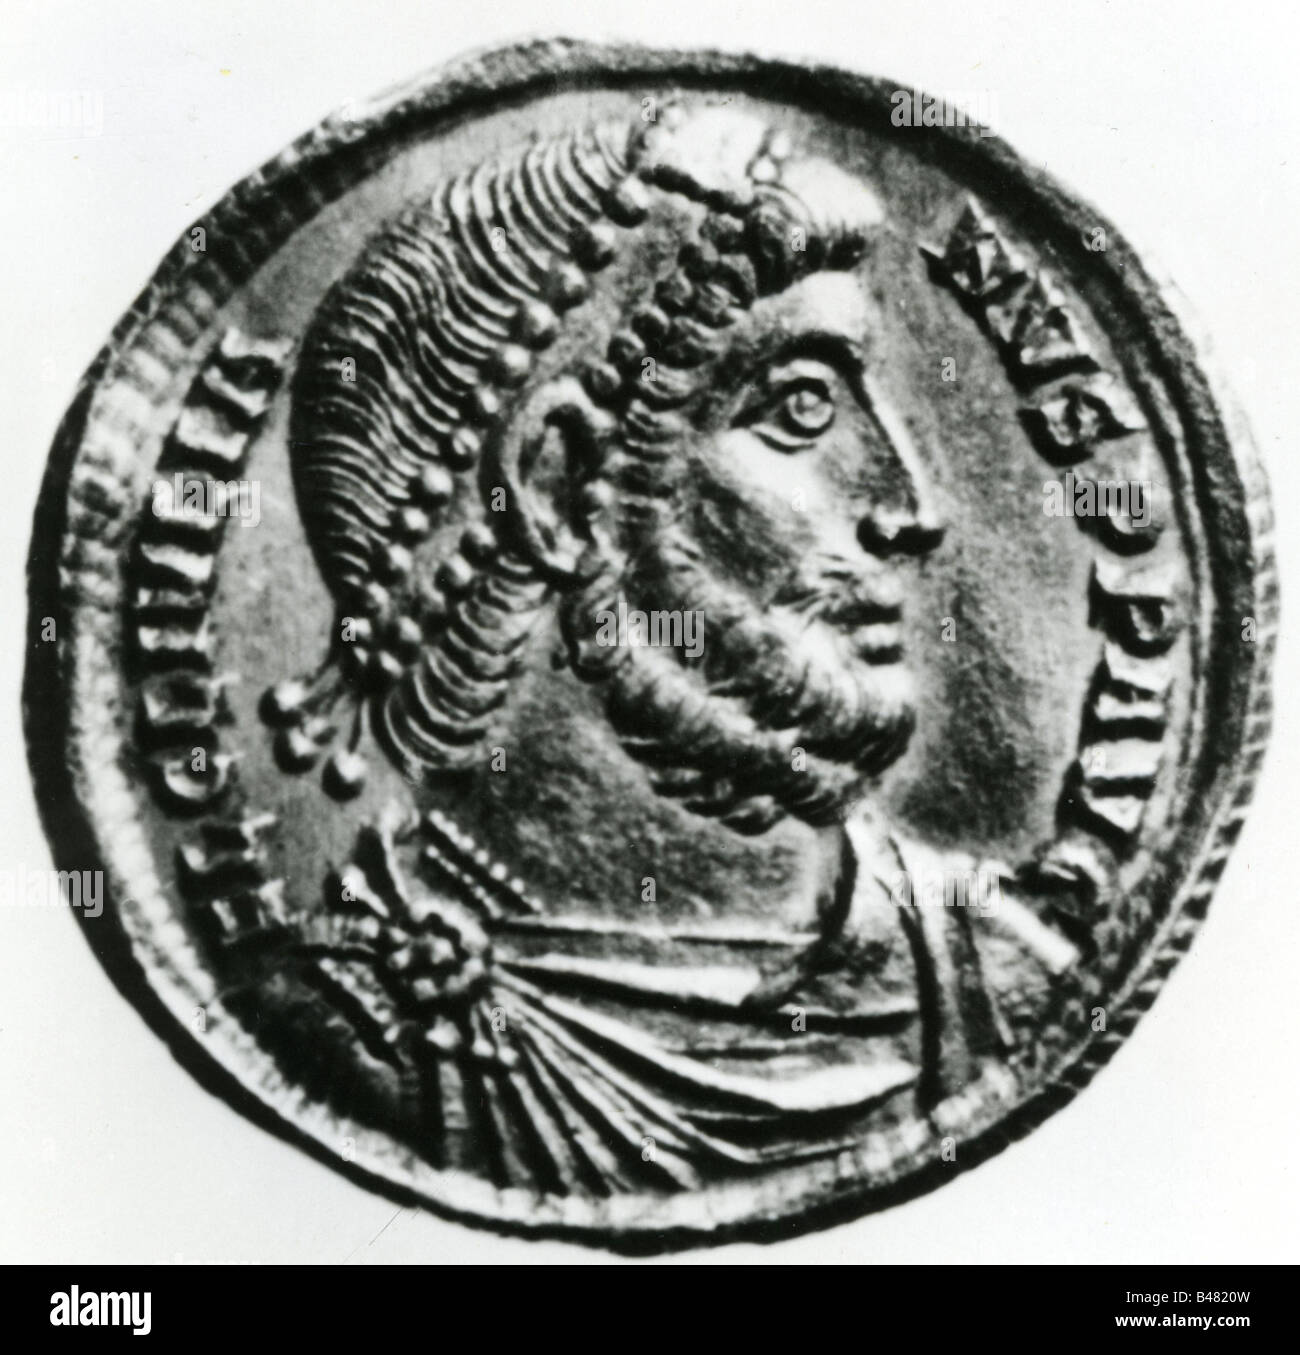 Julianus, Flavius Claudius, genannt 'The Apostate', 331 - 26.3.363 n. Chr., römischer Kaiser 361 - 363 n. Chr., Porträt, Seitenansicht, Münze, Stockfoto